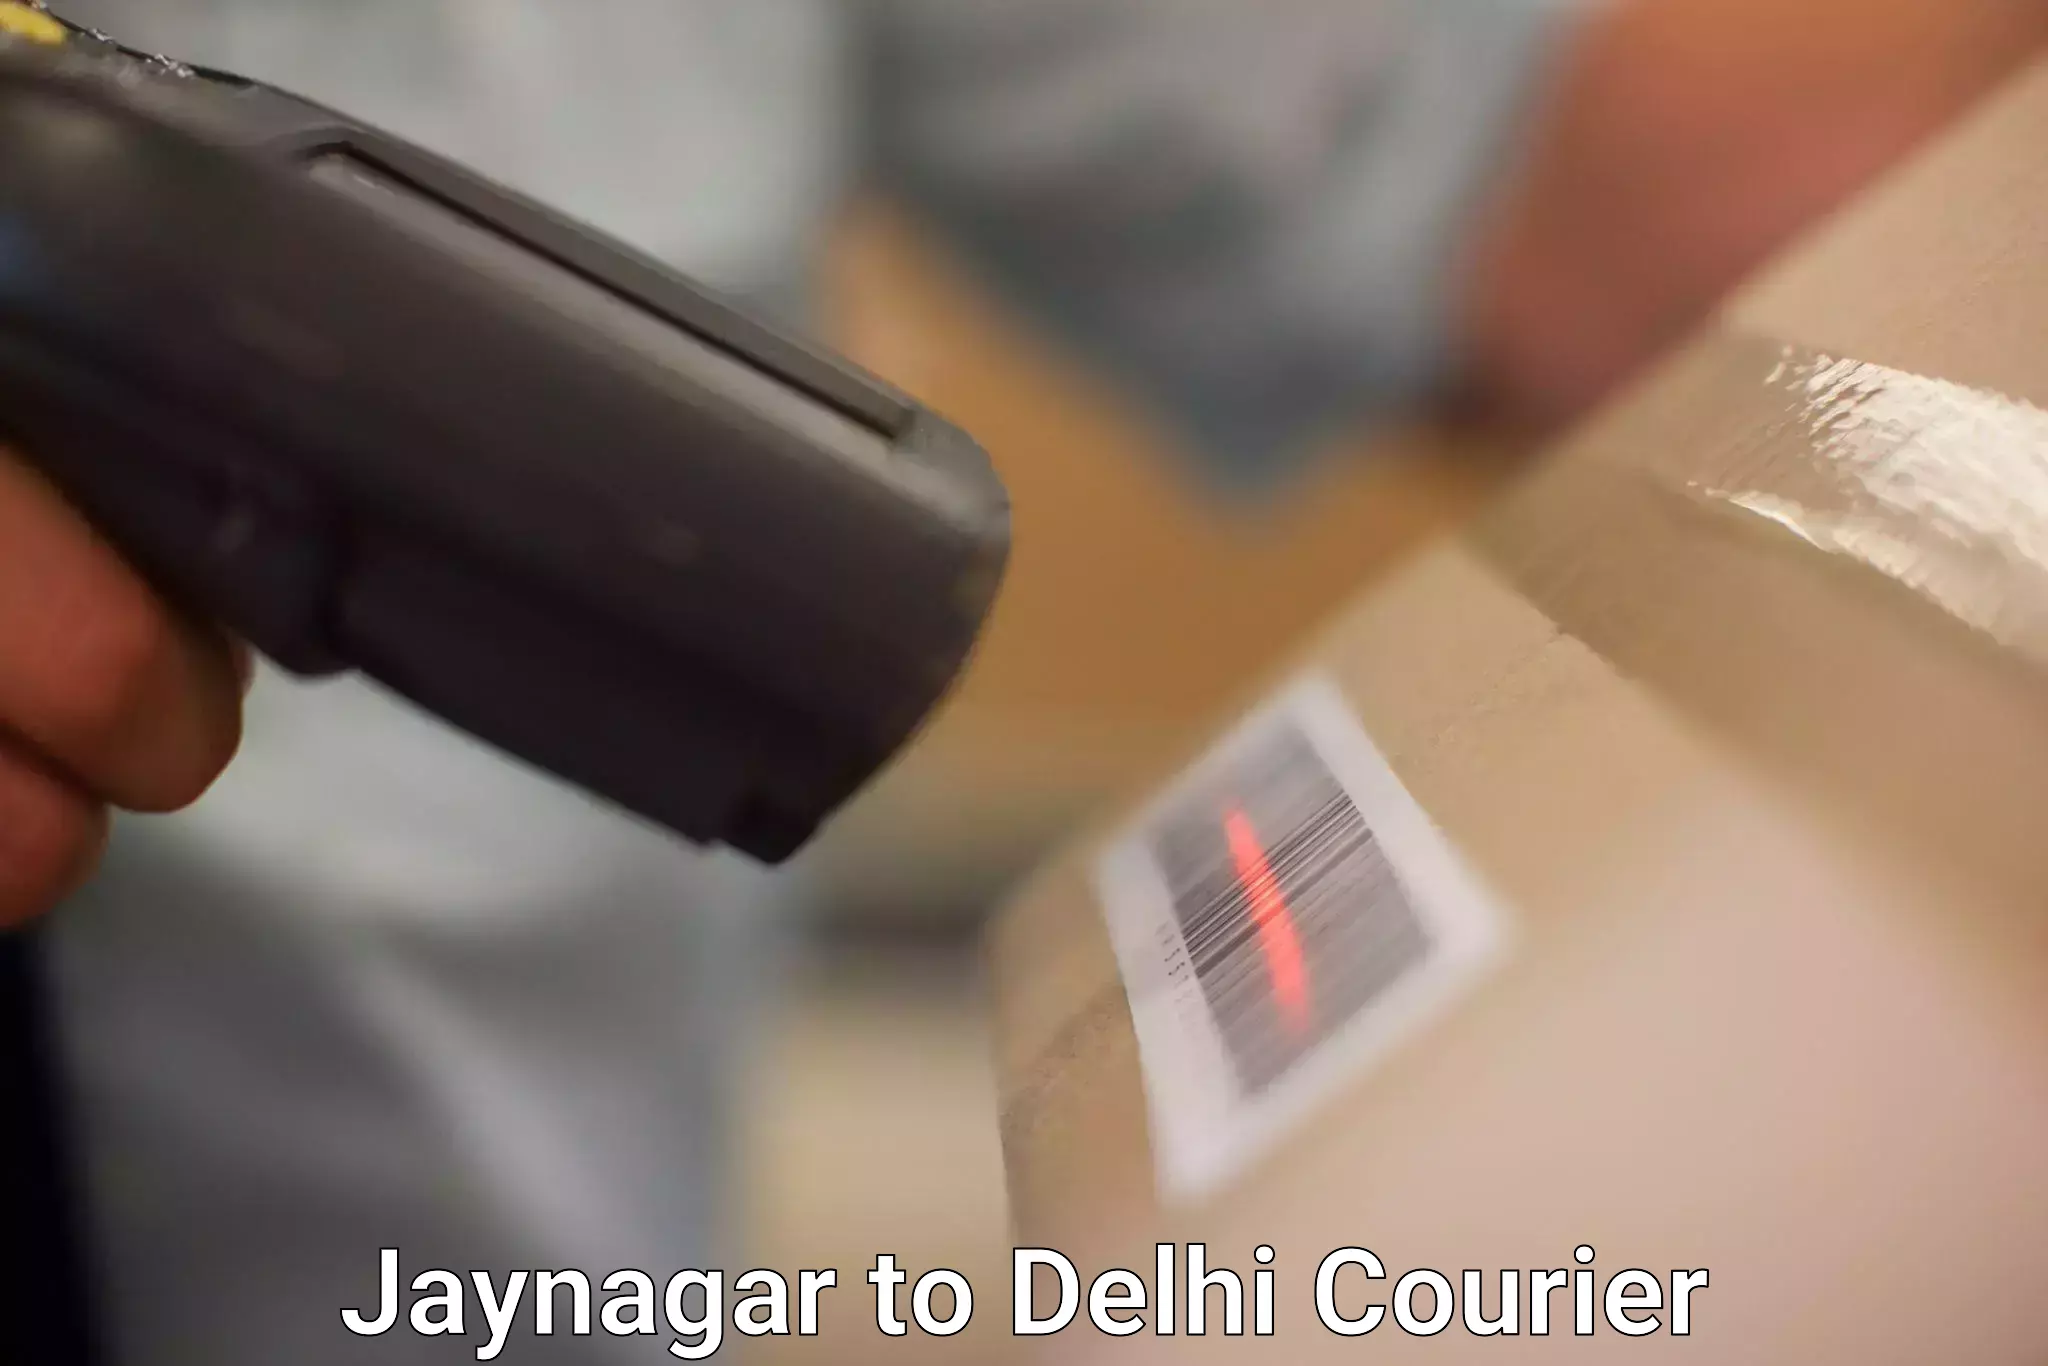 Easy access courier services in Jaynagar to Ashok Vihar